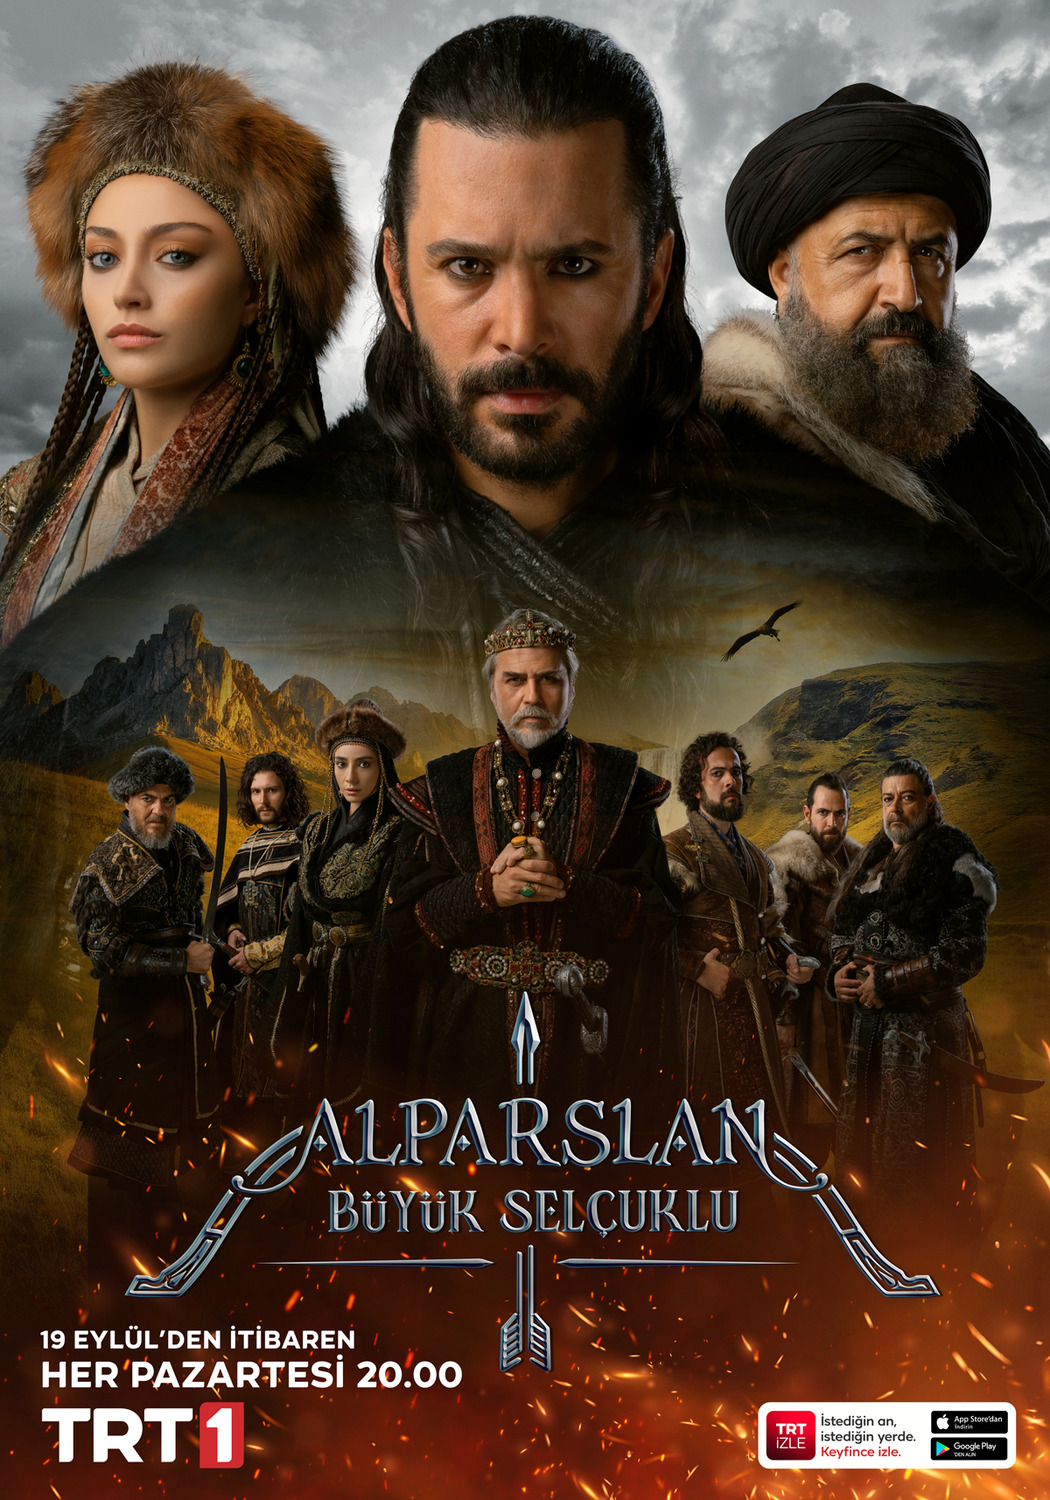 Extra Large TV Poster Image for Alparslan: Büyük Selçuklu (#2 of 2)